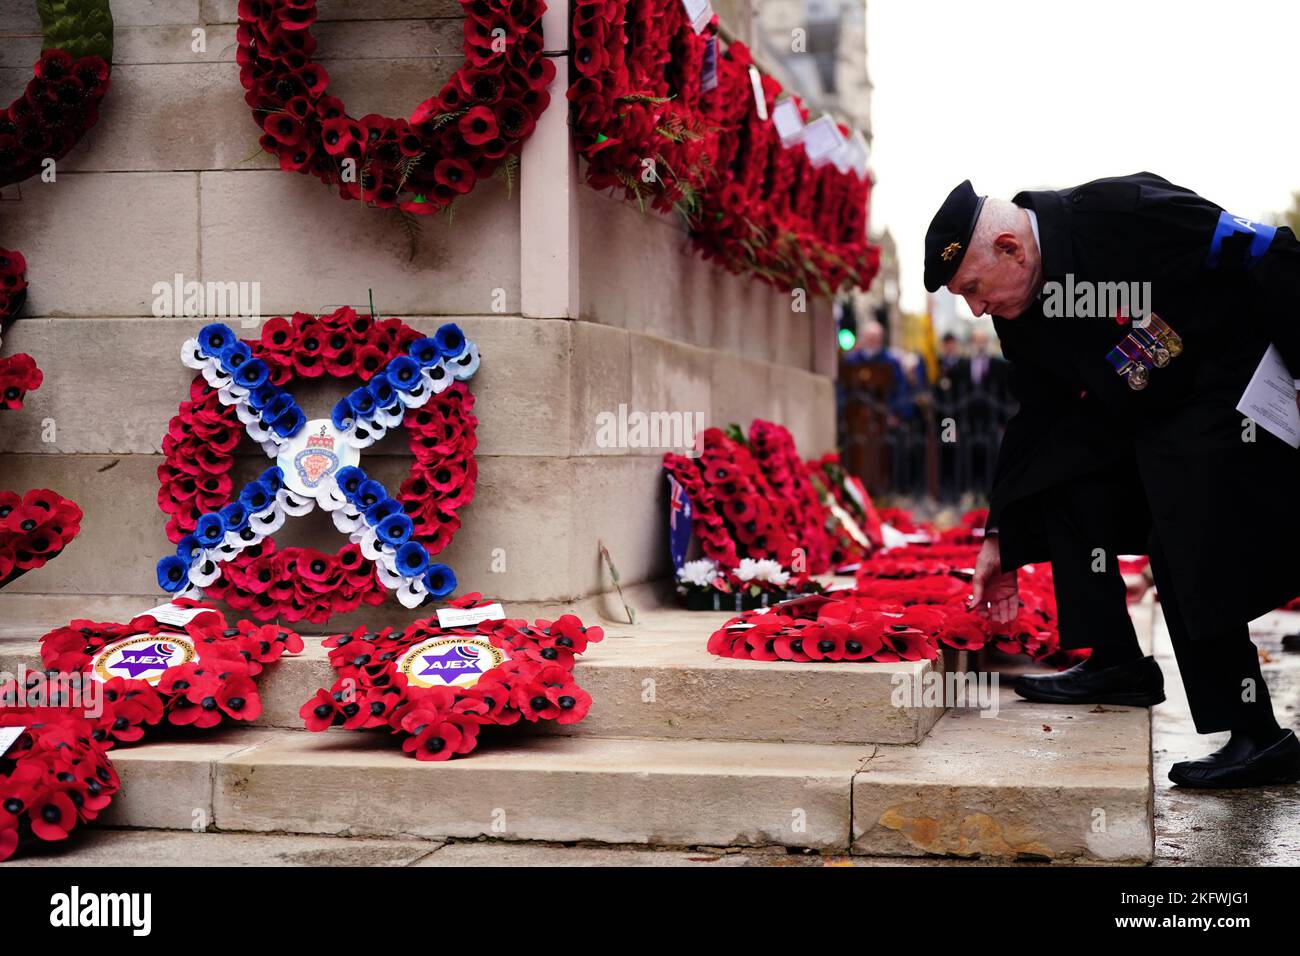 Ein Veteran legt während der jährlichen Parade der Vereinigung jüdischer Ex-Soldaten und Frauen im Cenotaph in Whitehall, London, einen Kranz nieder. Bilddatum: Sonntag, 20. November 2022. Stockfoto